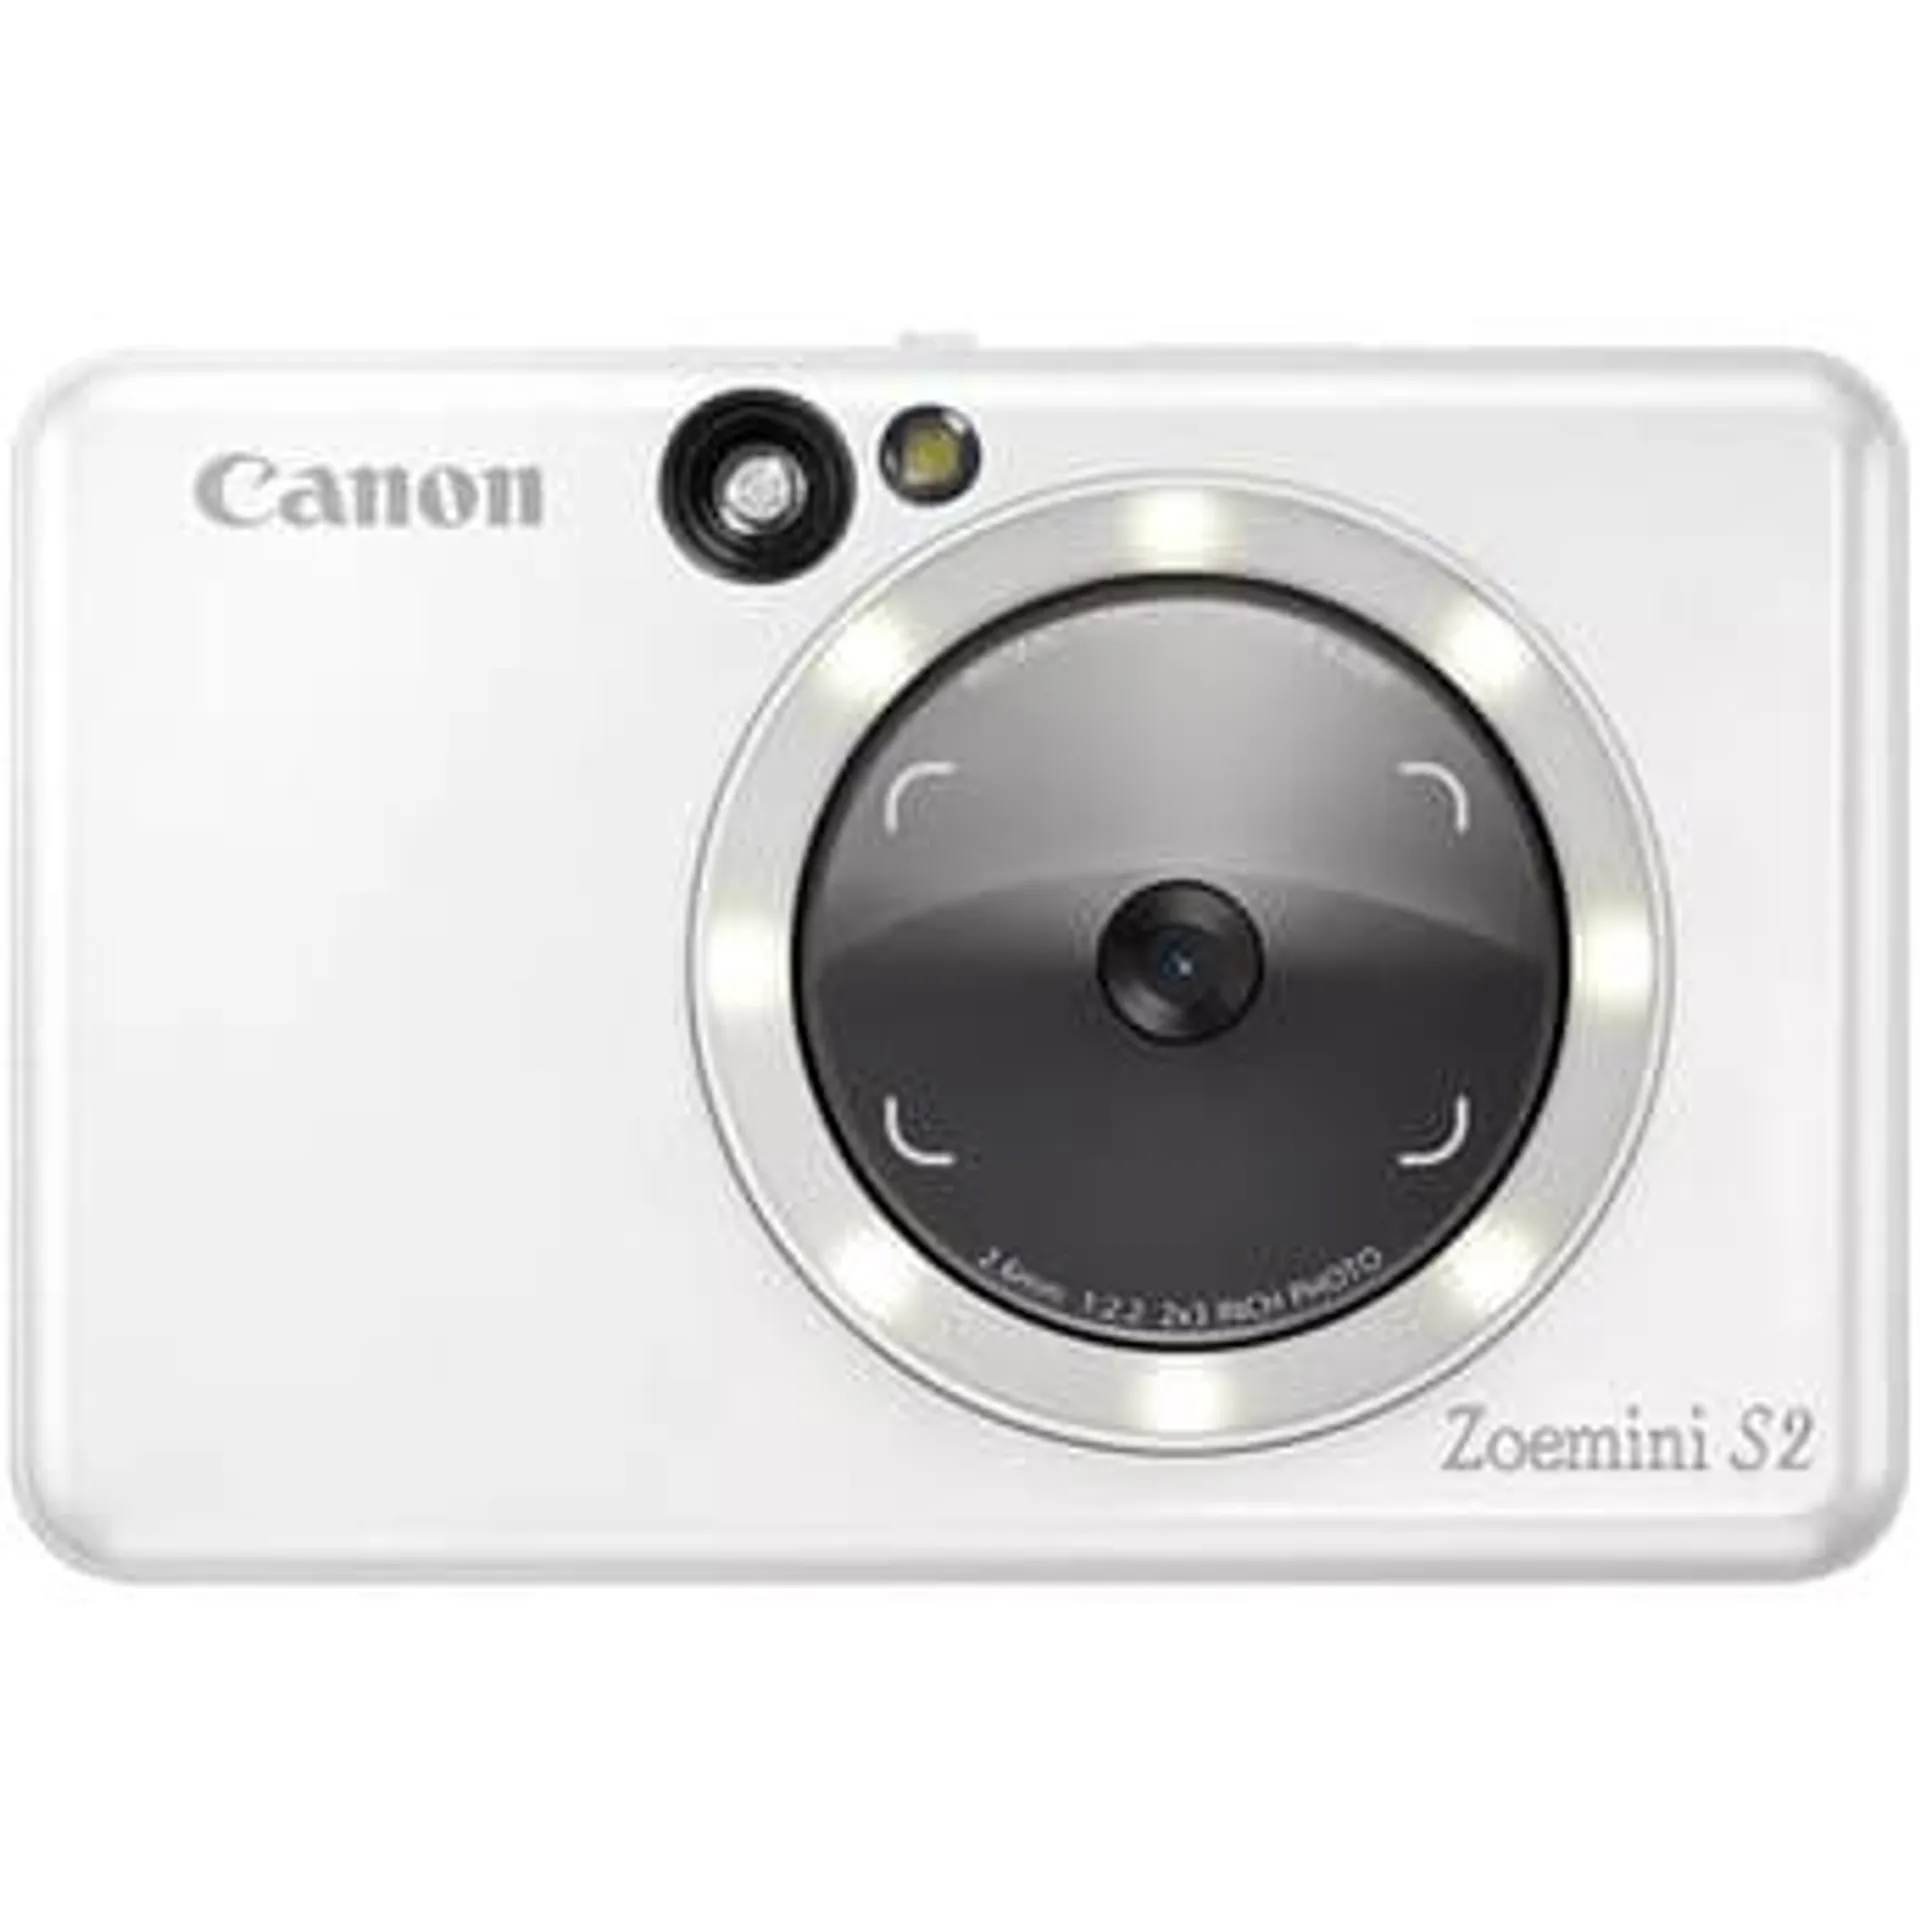 Canon Zoemini S2 Instant Photo Printer (White)